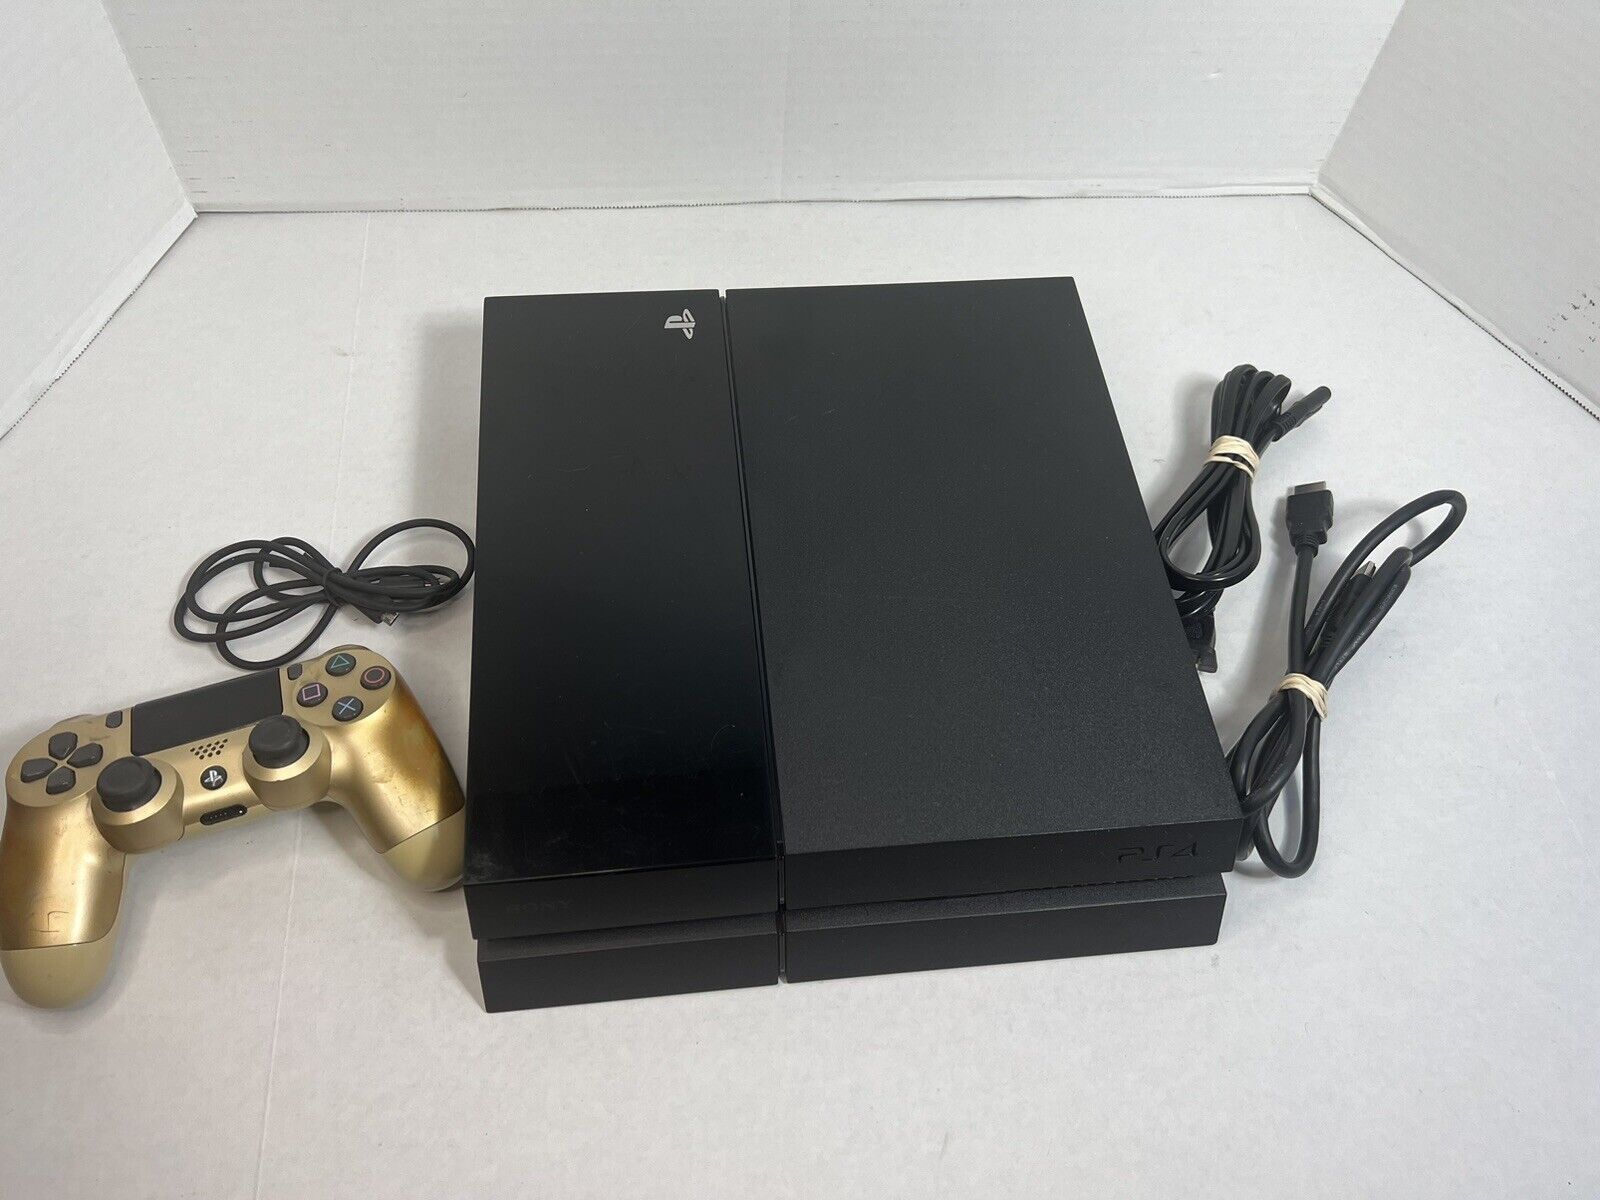 Sony PlayStation 4 500GB Console - Black W/ Controller